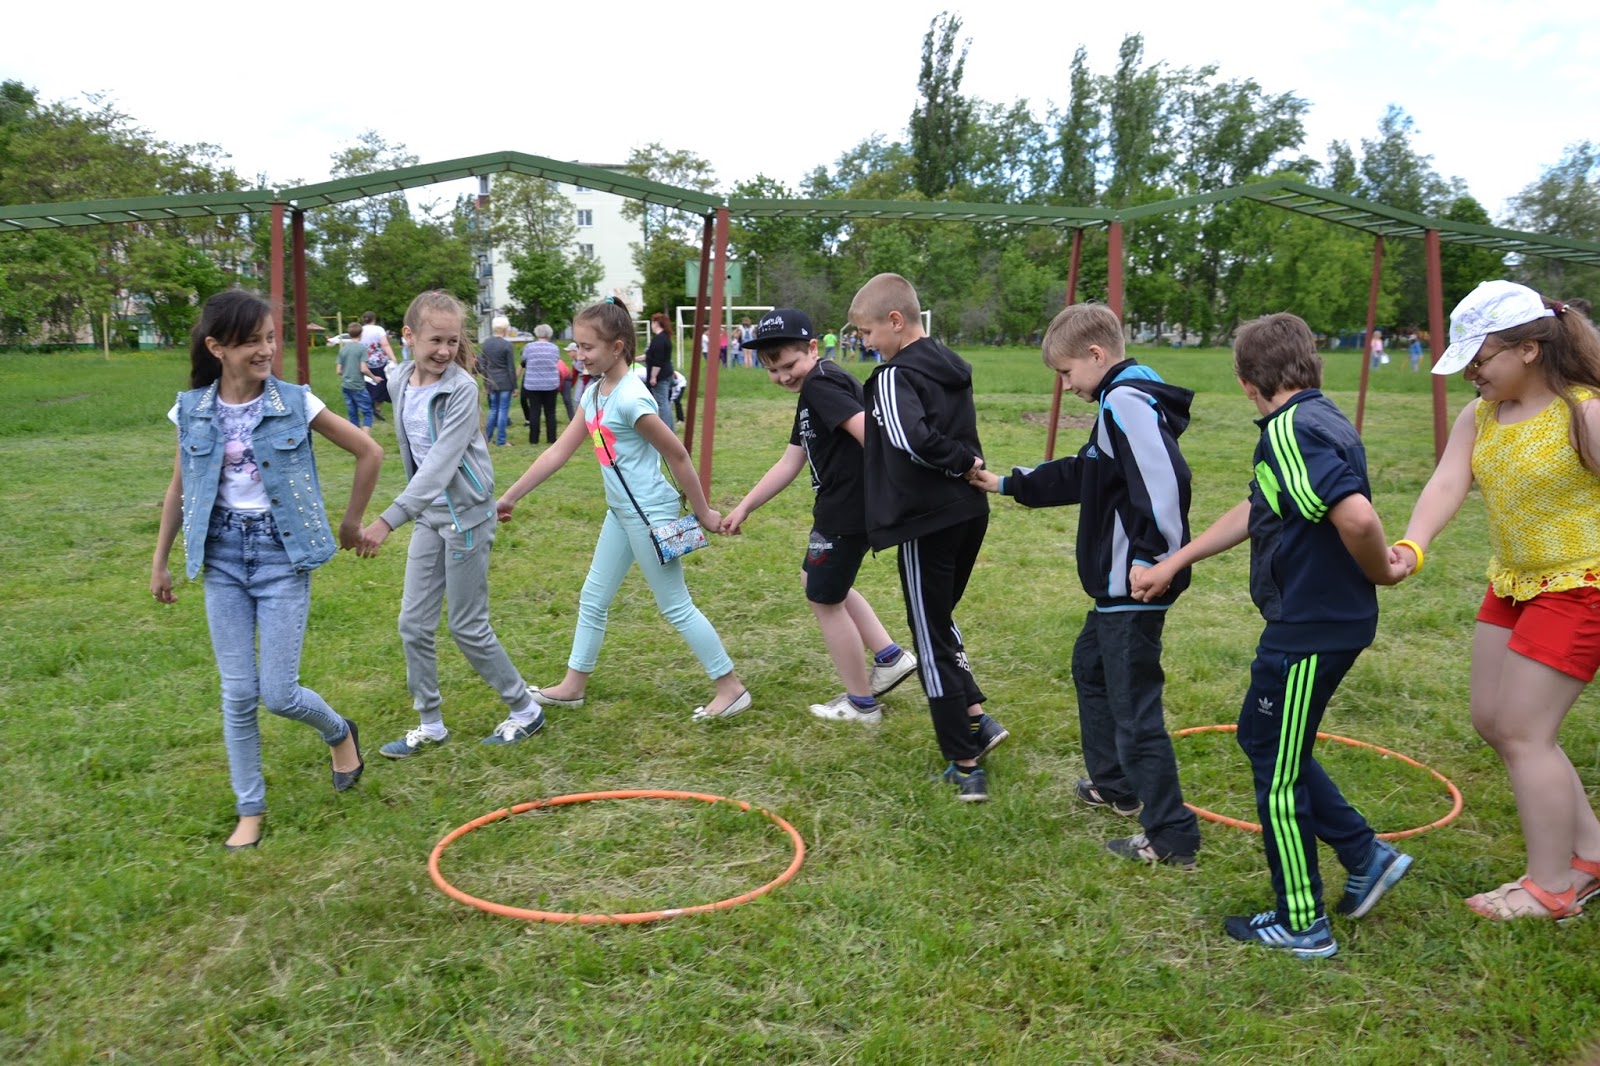 Дневной лагерь для детей в москве. Малые Олимпийские игры в лагере дневного пребывания. Игры для пришкольного лагеря дневного. Игры для детей в пришкольном лагере. Весёлые старты в лагере дневного пребывания.